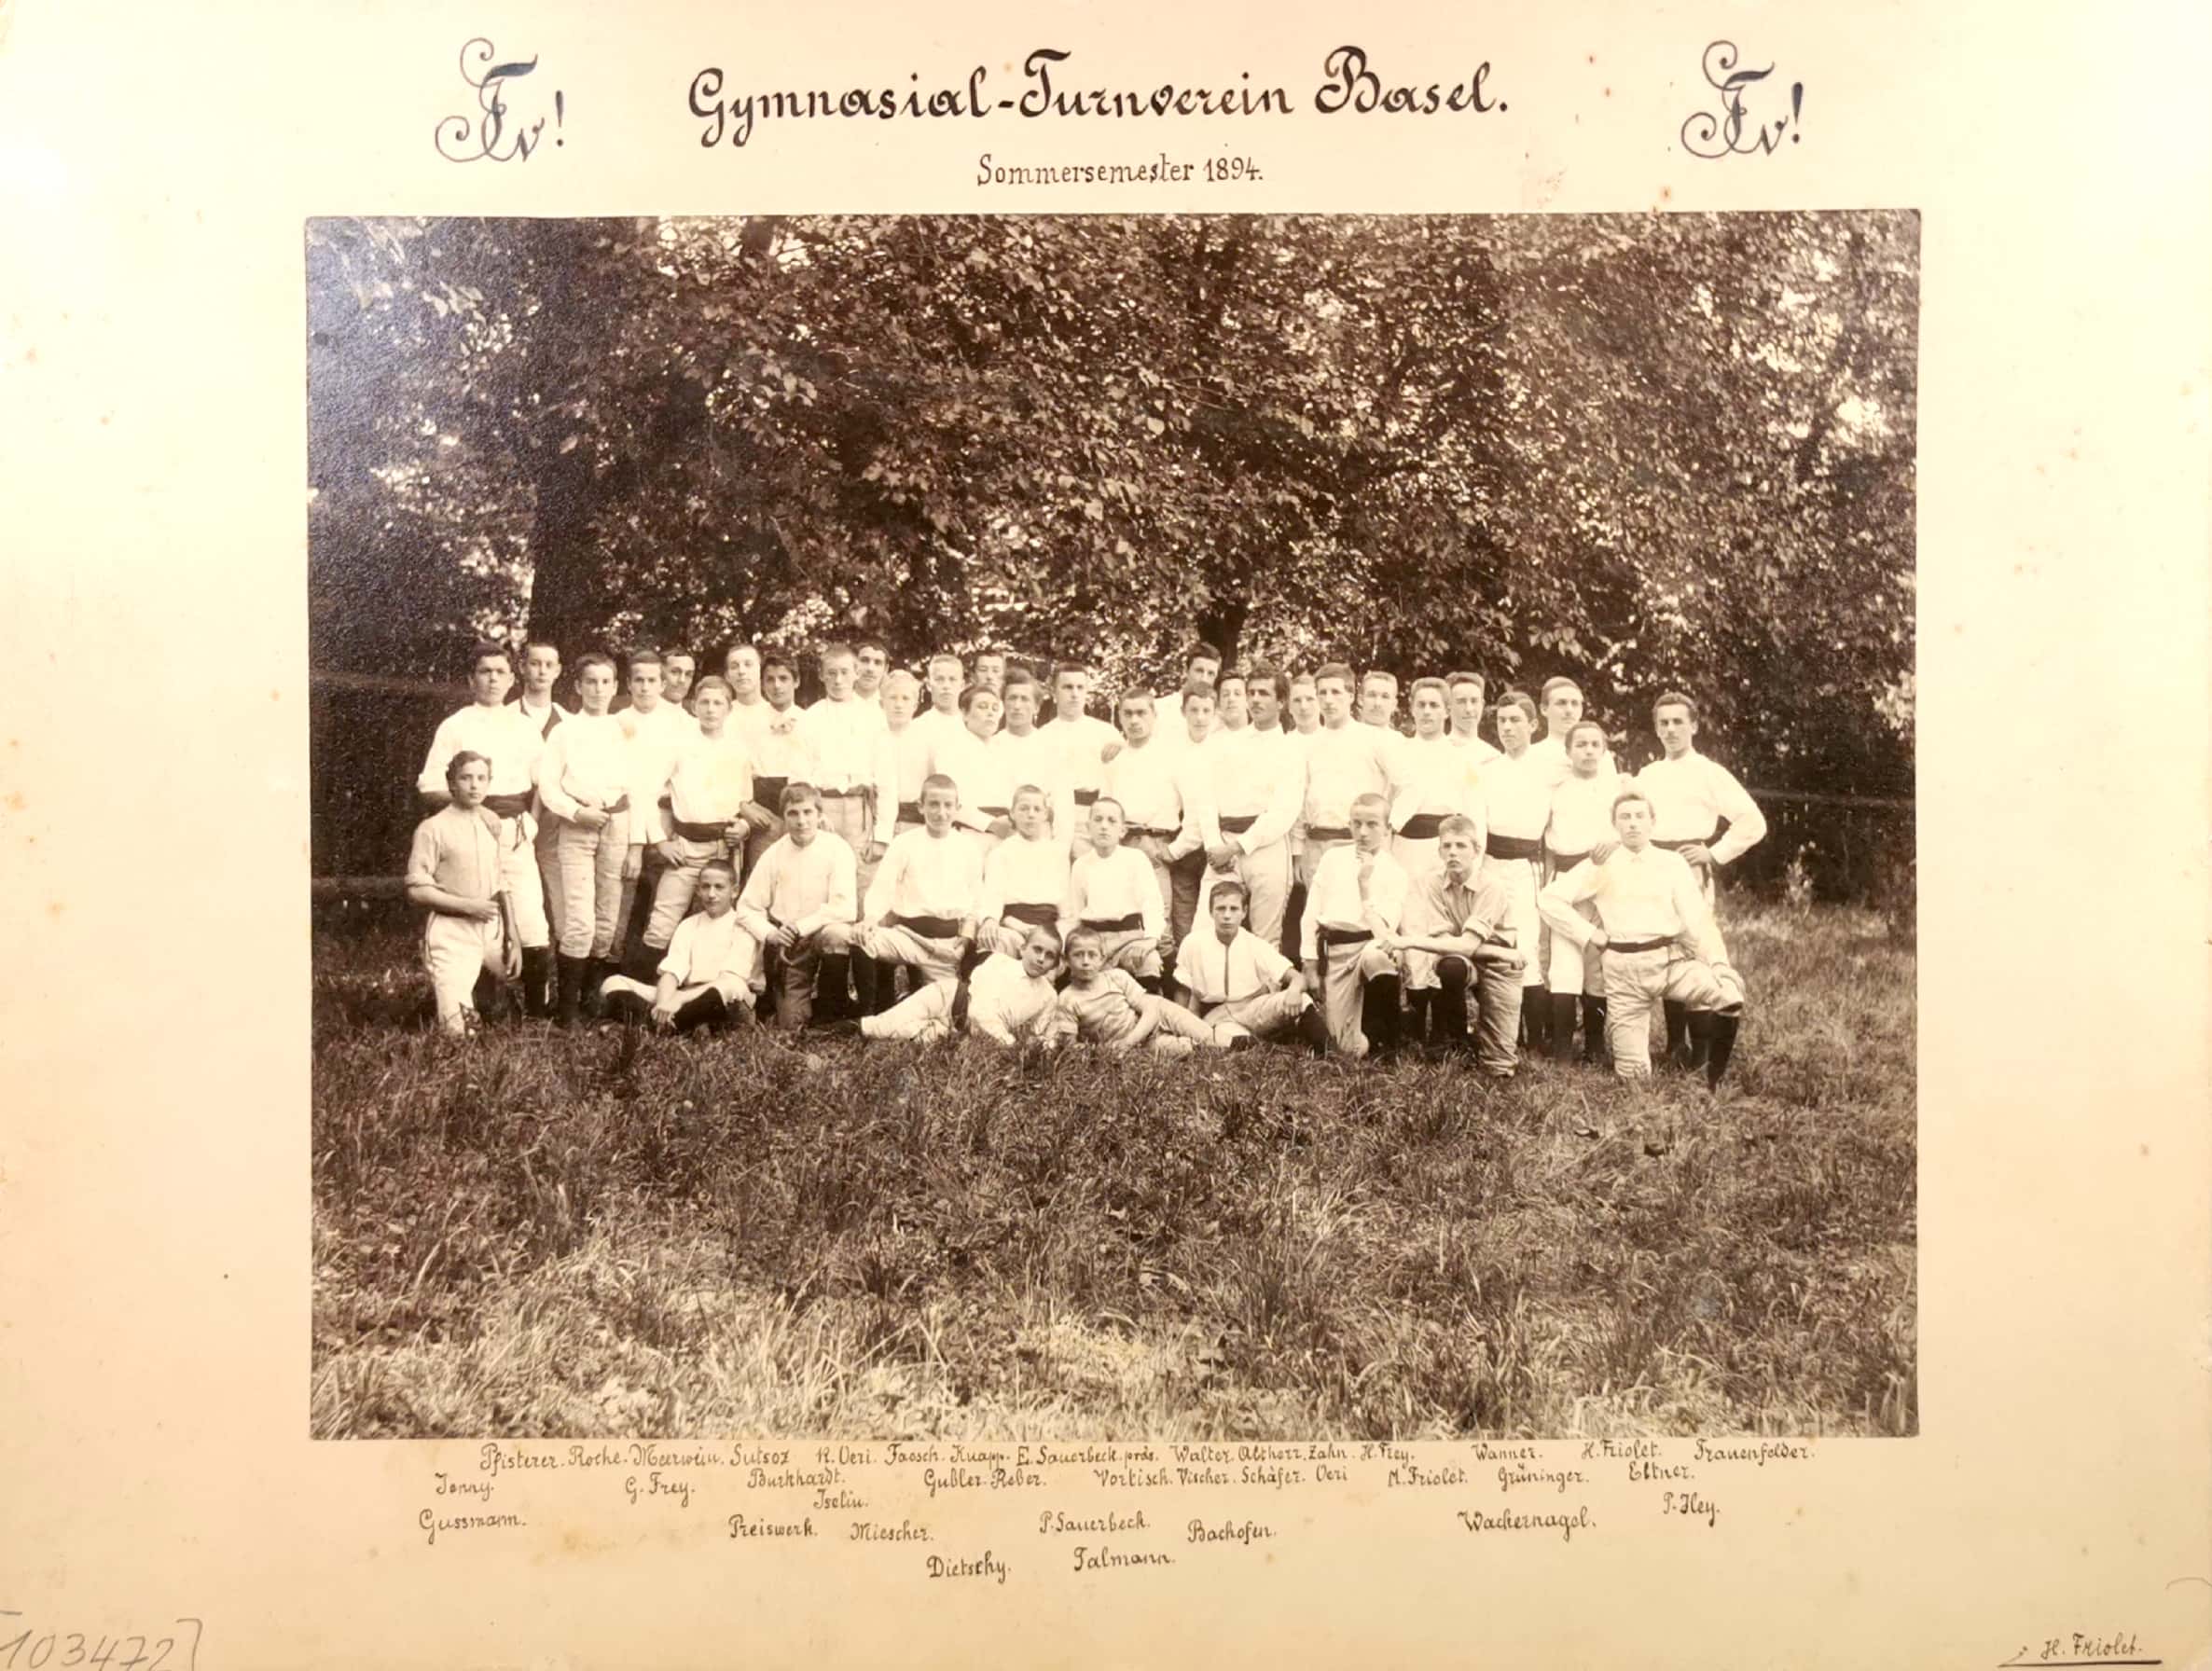  - Orignal-Foto: 'Gymnasial-Turnverein Basel Sommersemester 1894. Gruppenbild mit 46 Vereinsmitglieder.